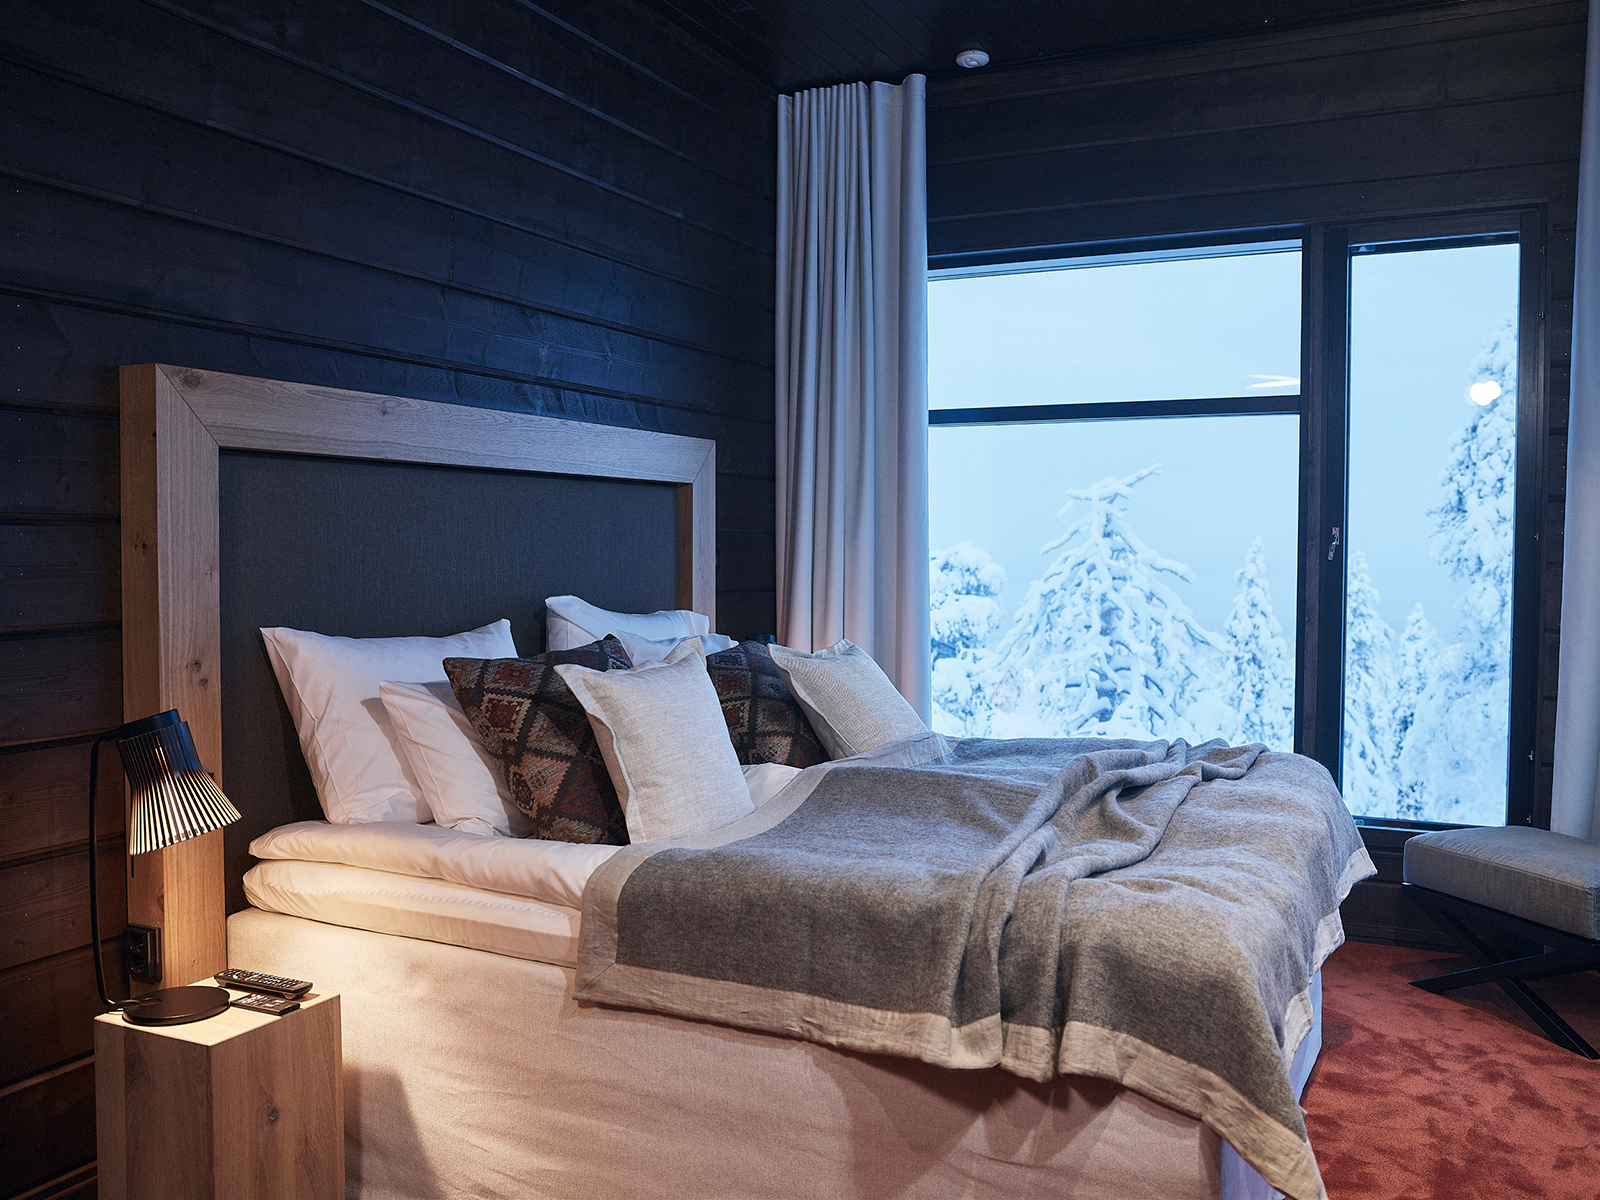 Ein Schlafzimmer mit einer Petite Tischleuchte auf dem Nachttisch, große Fenster zeigen schneebedeckte Bäume.